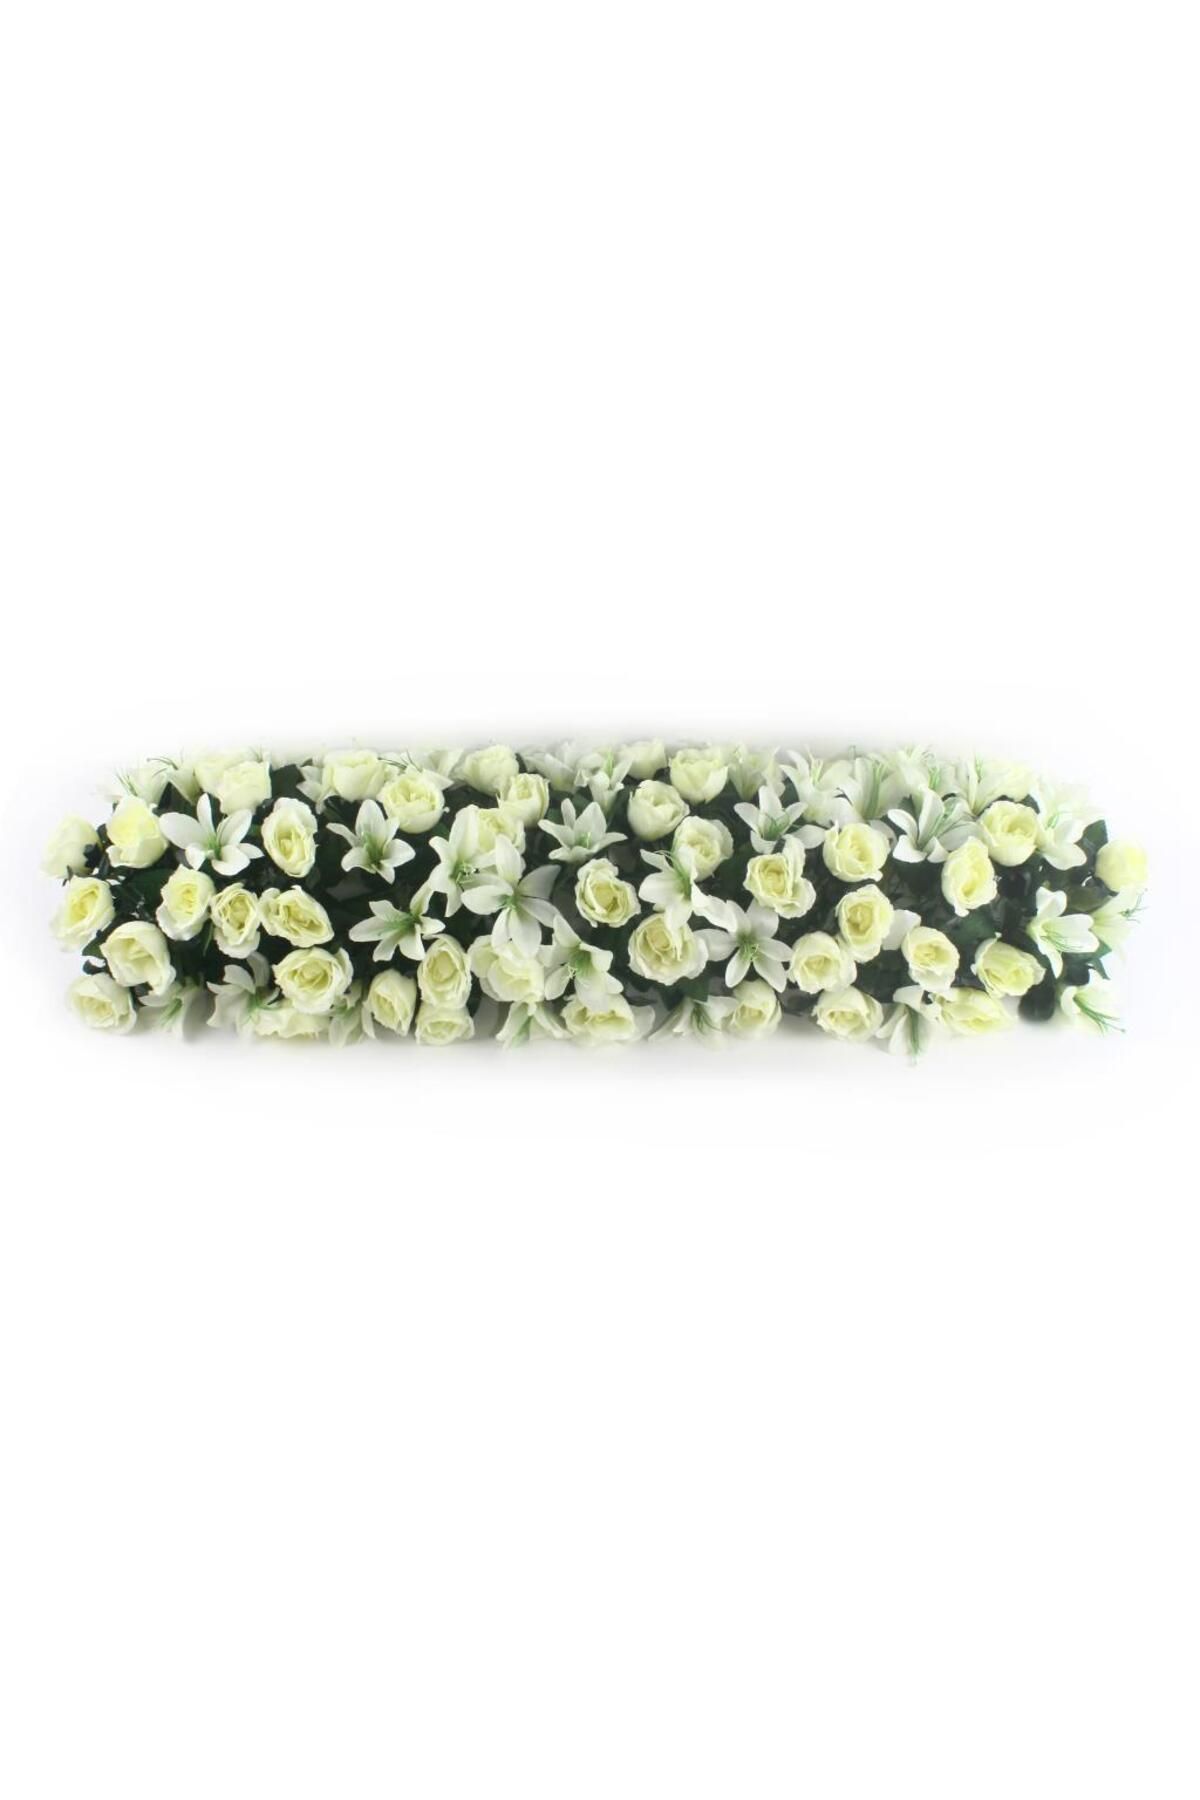 Nettenevime Yapay Çiçek Tak Organizasyon Nişan Masası Çiçek Süsleme 25x120cm